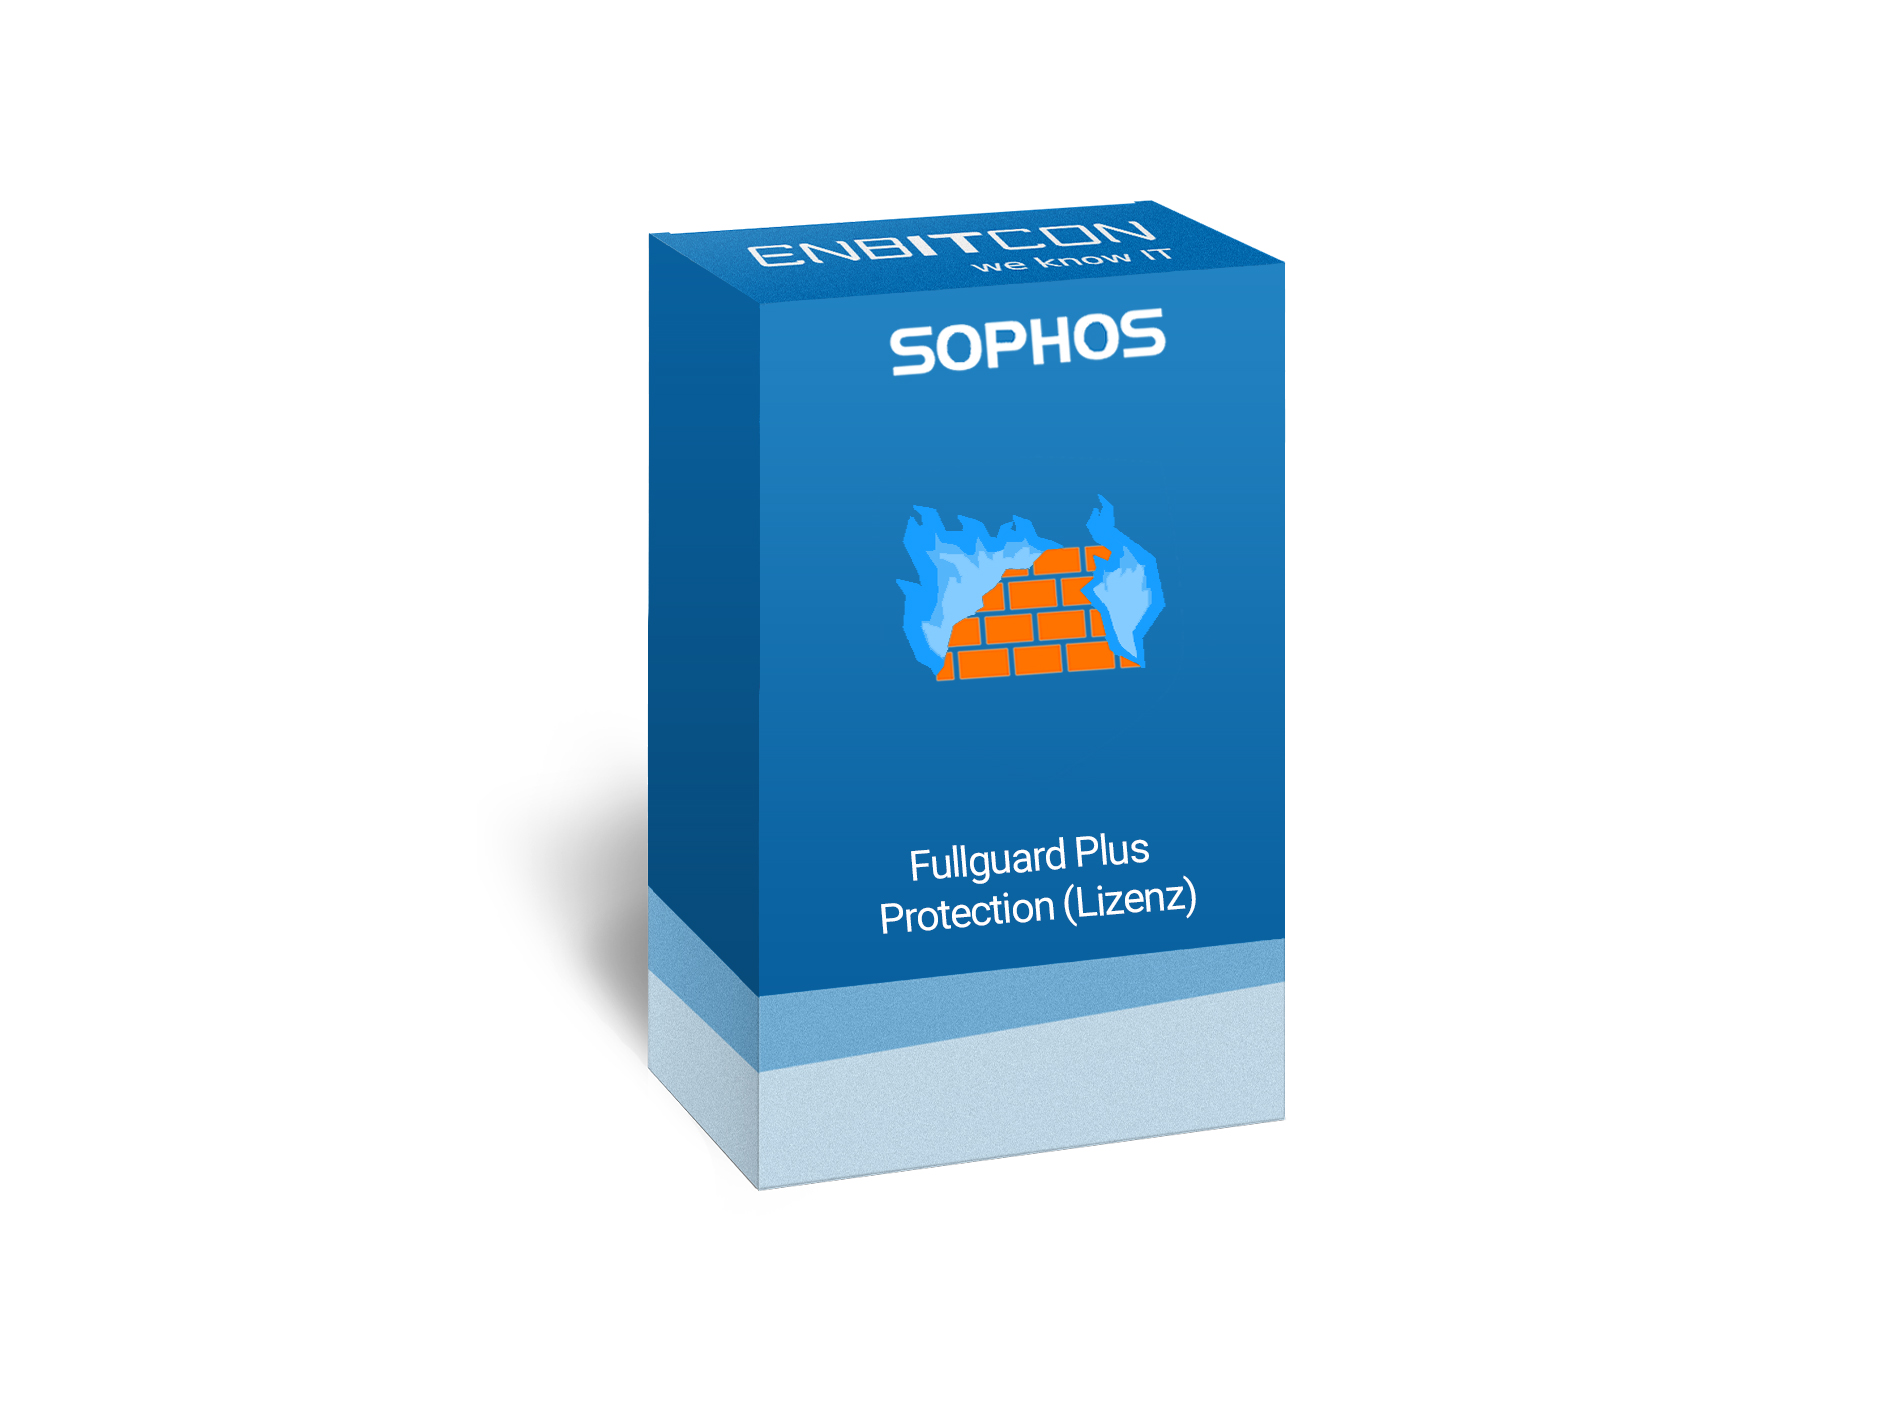 Sophos Full Guard Plus Bundle Lizenz Vorschaubild bestehend aus einem blauen Schild, indem sich eine orangene Mauer mit blauen Flammen und ein orangenes Plus befinden